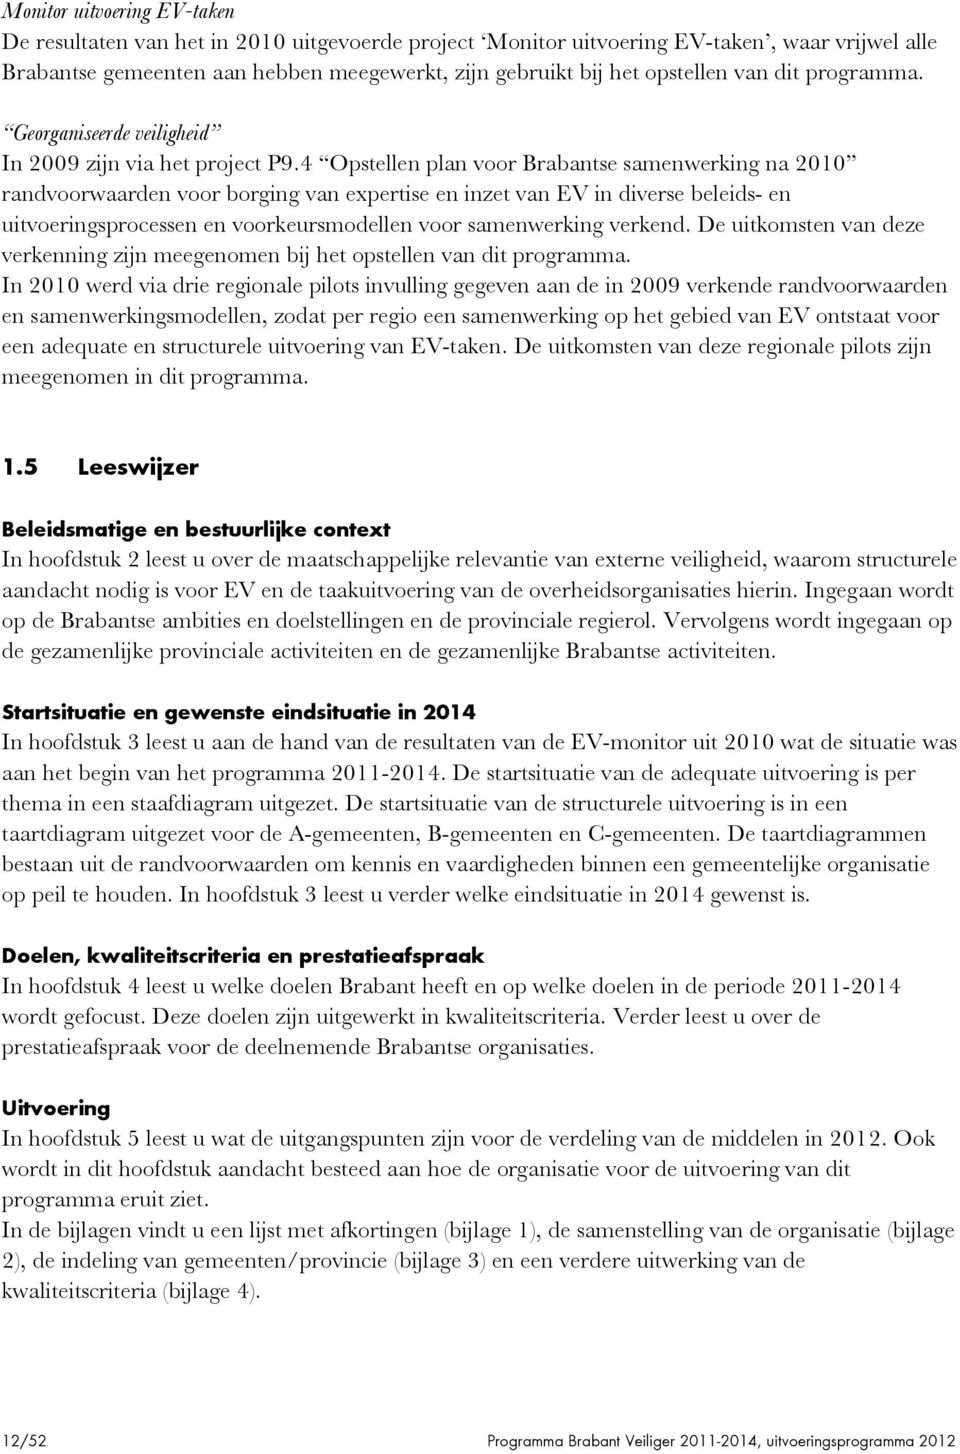 4 Opstellen plan voor Brabantse samenwerking na 2010 randvoorwaarden voor borging van expertise en inzet van EV in diverse beleids- en uitvoeringsprocessen en voorkeursmodellen voor samenwerking